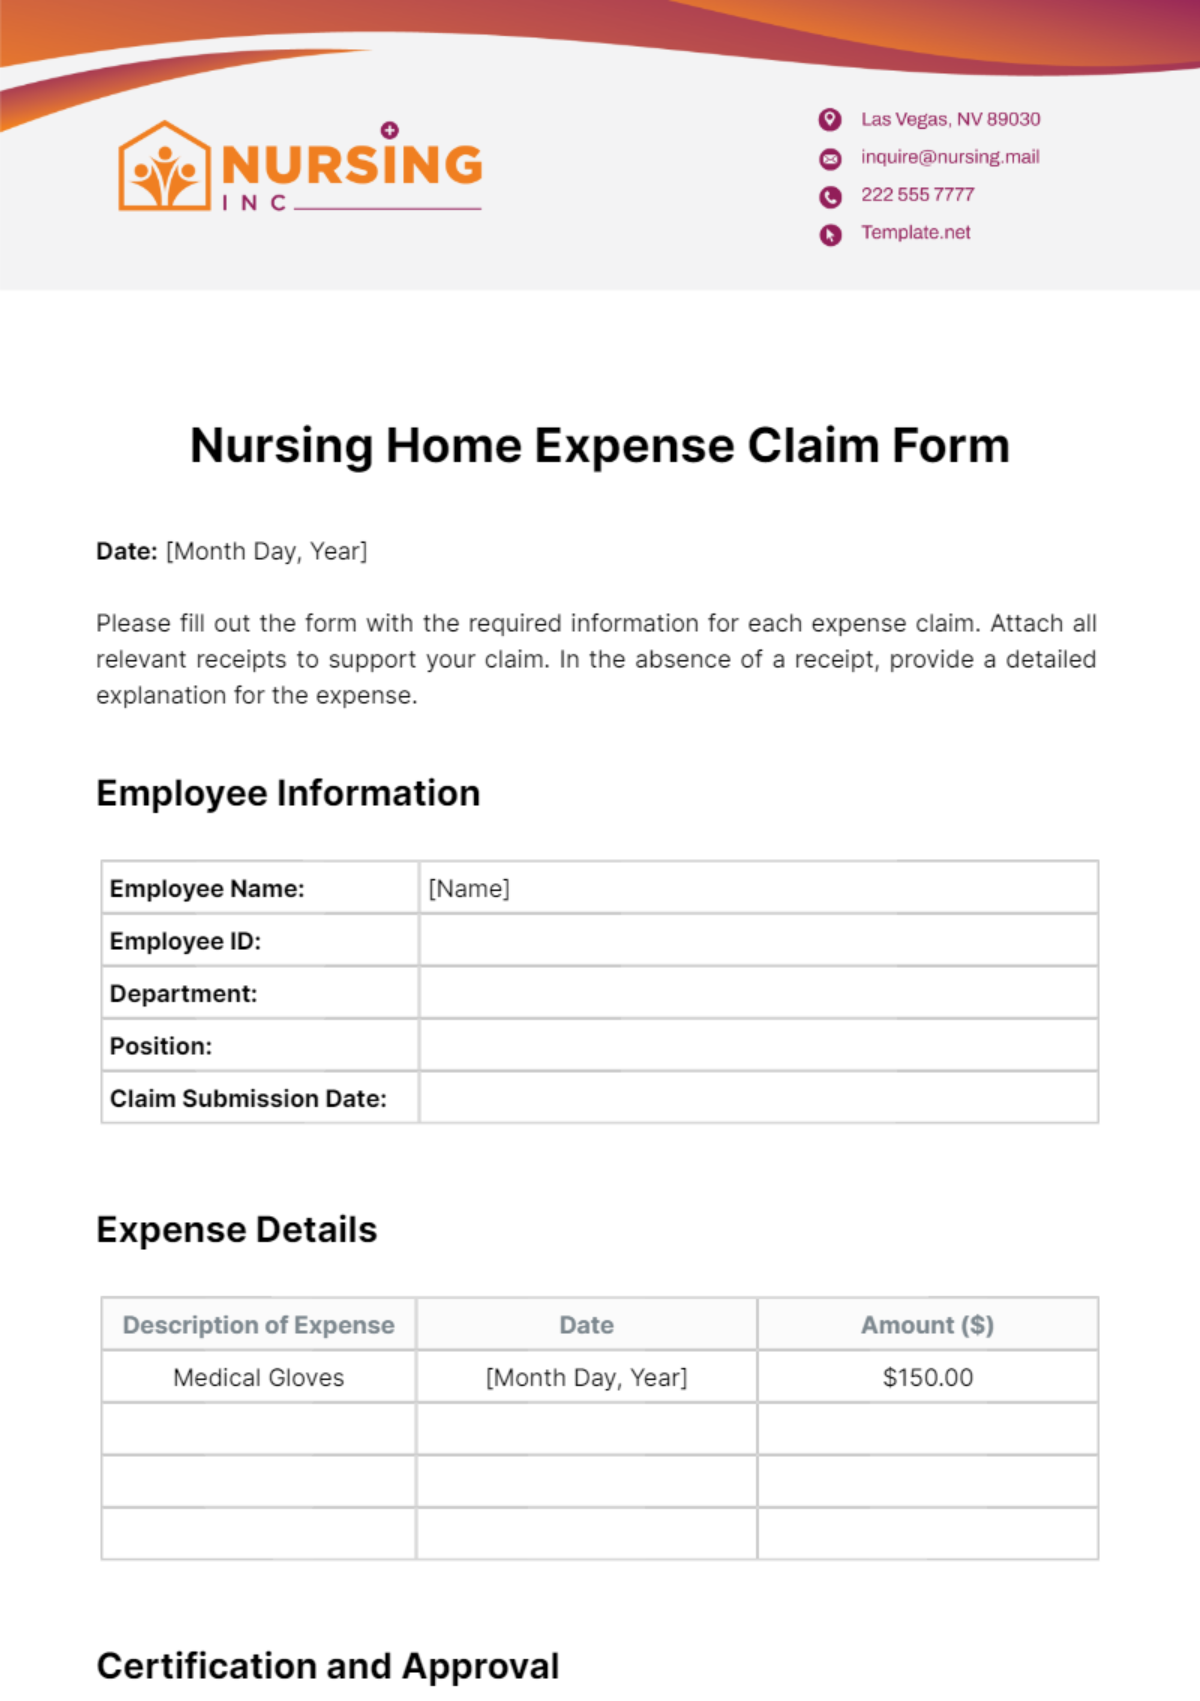 Nursing Home Expense Claim Form Template